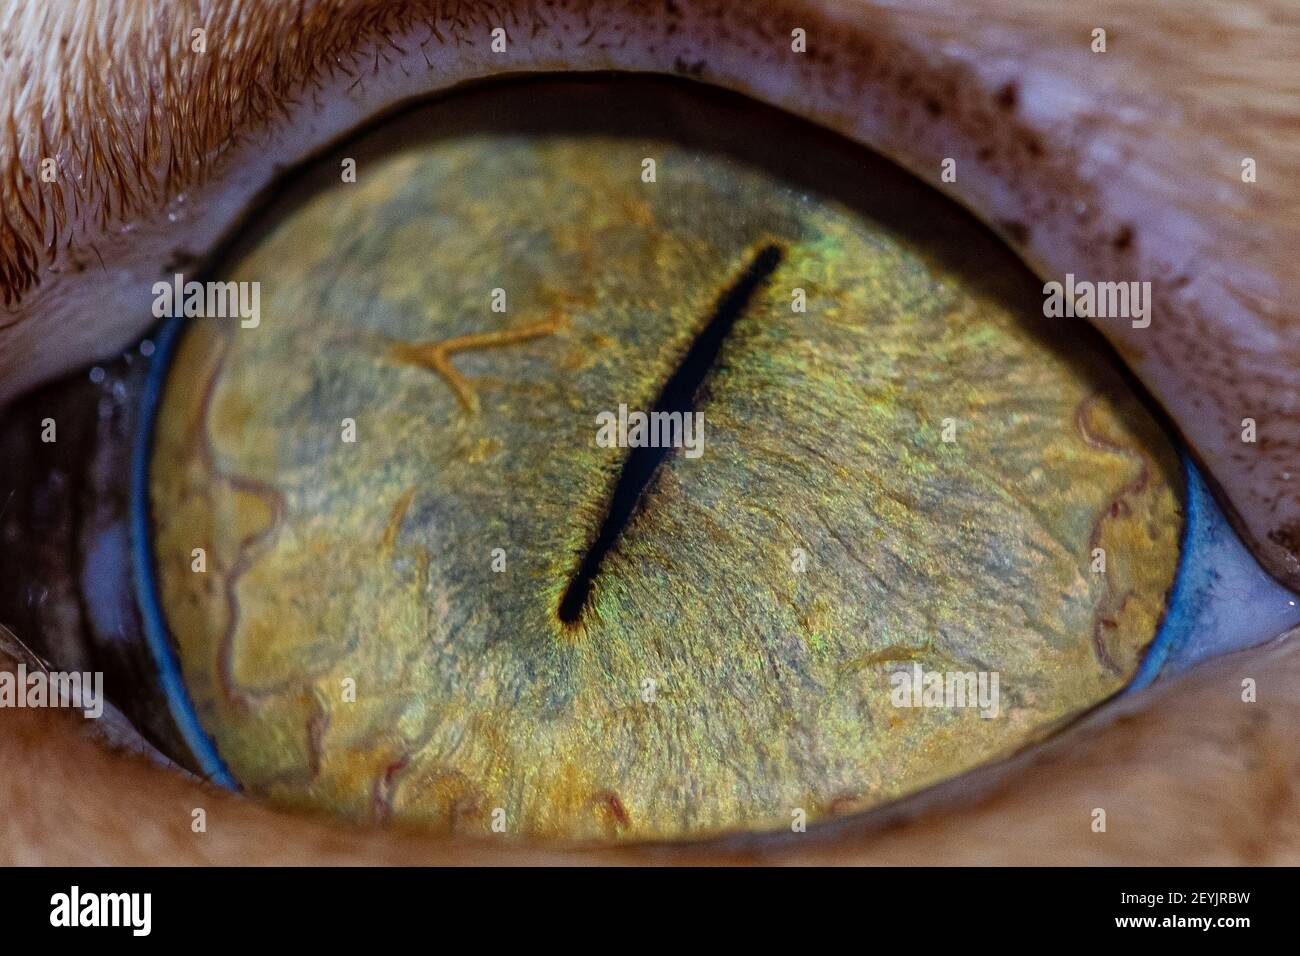 Dettaglio di pupilla e iride dell'occhio di un gatto, dettaglio anatomico felino Foto Stock